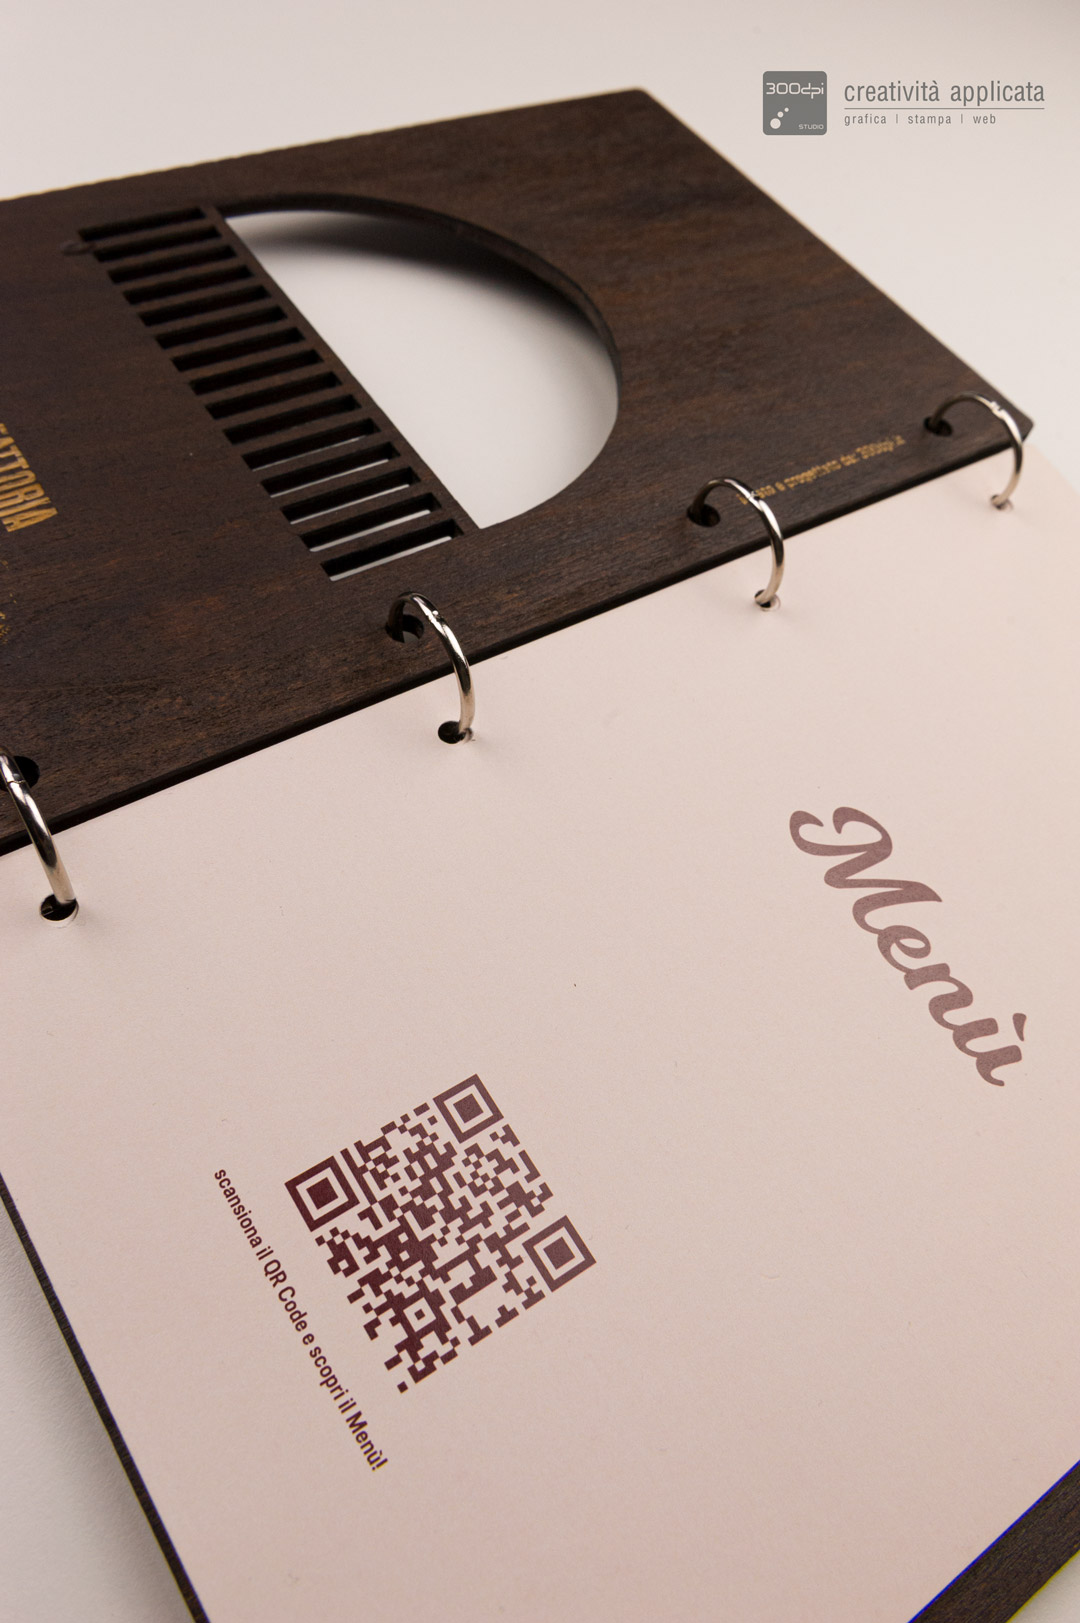 Porta menù in legno personalizzati su misura - 300dpi STUDIO